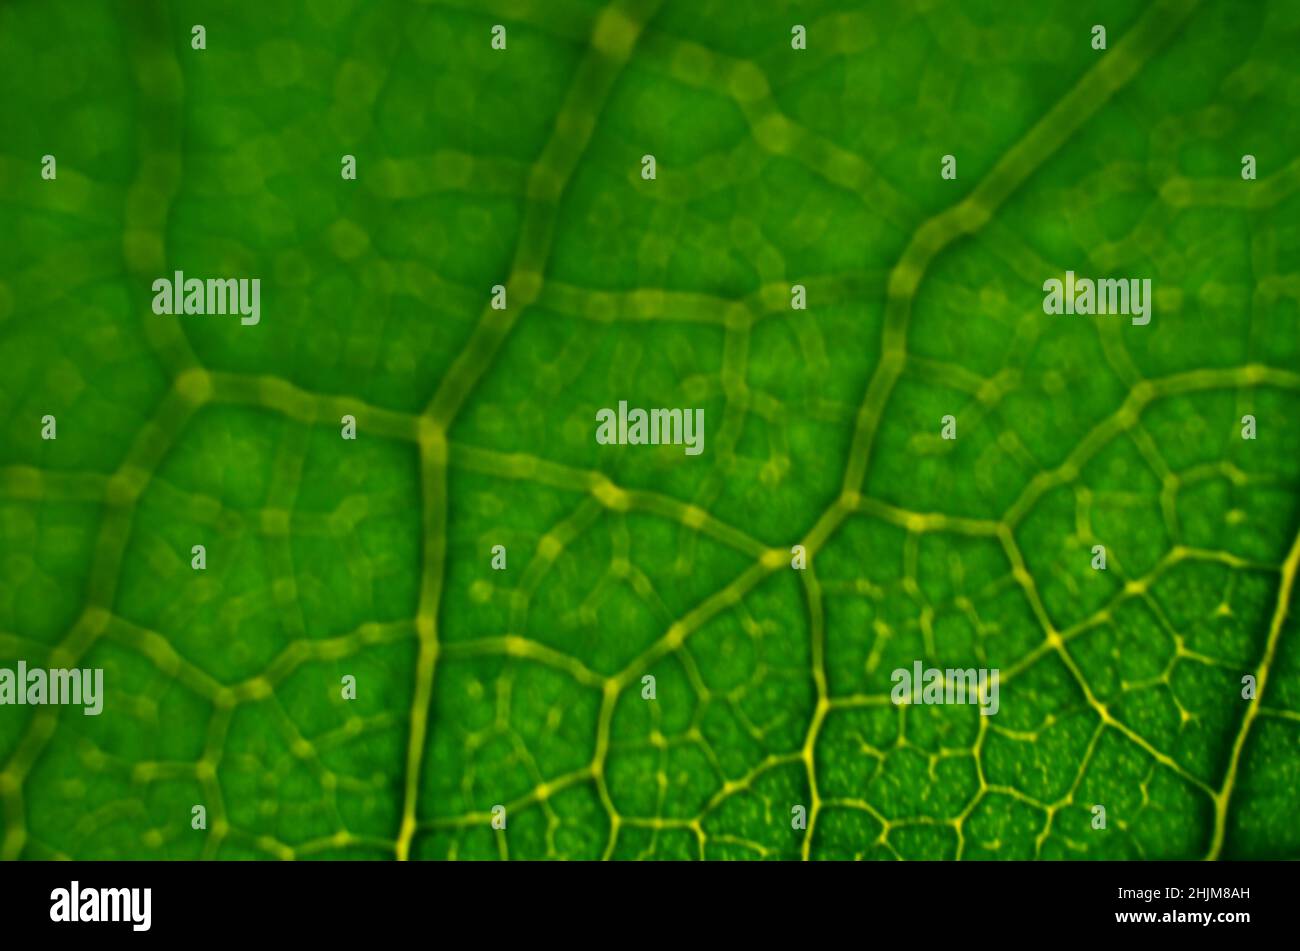 Primer plano de una imagen desfocalizada de textura de hoja verde. Fondo verde abstracto con espacio de copia. Foto de stock